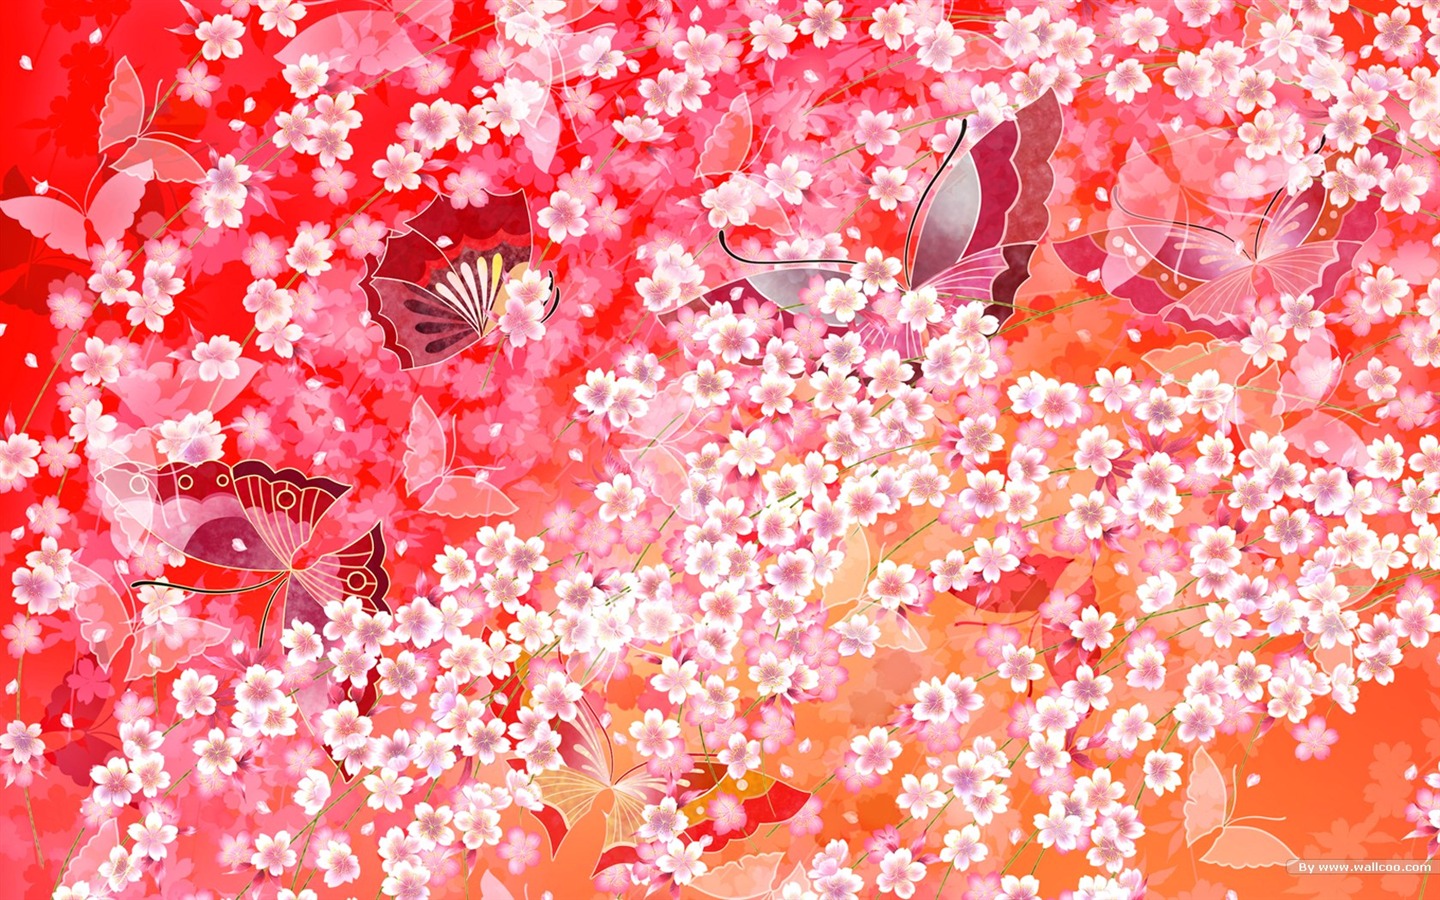 일본 스타일의 벽지 패턴 및 색상 #14 - 1440x900